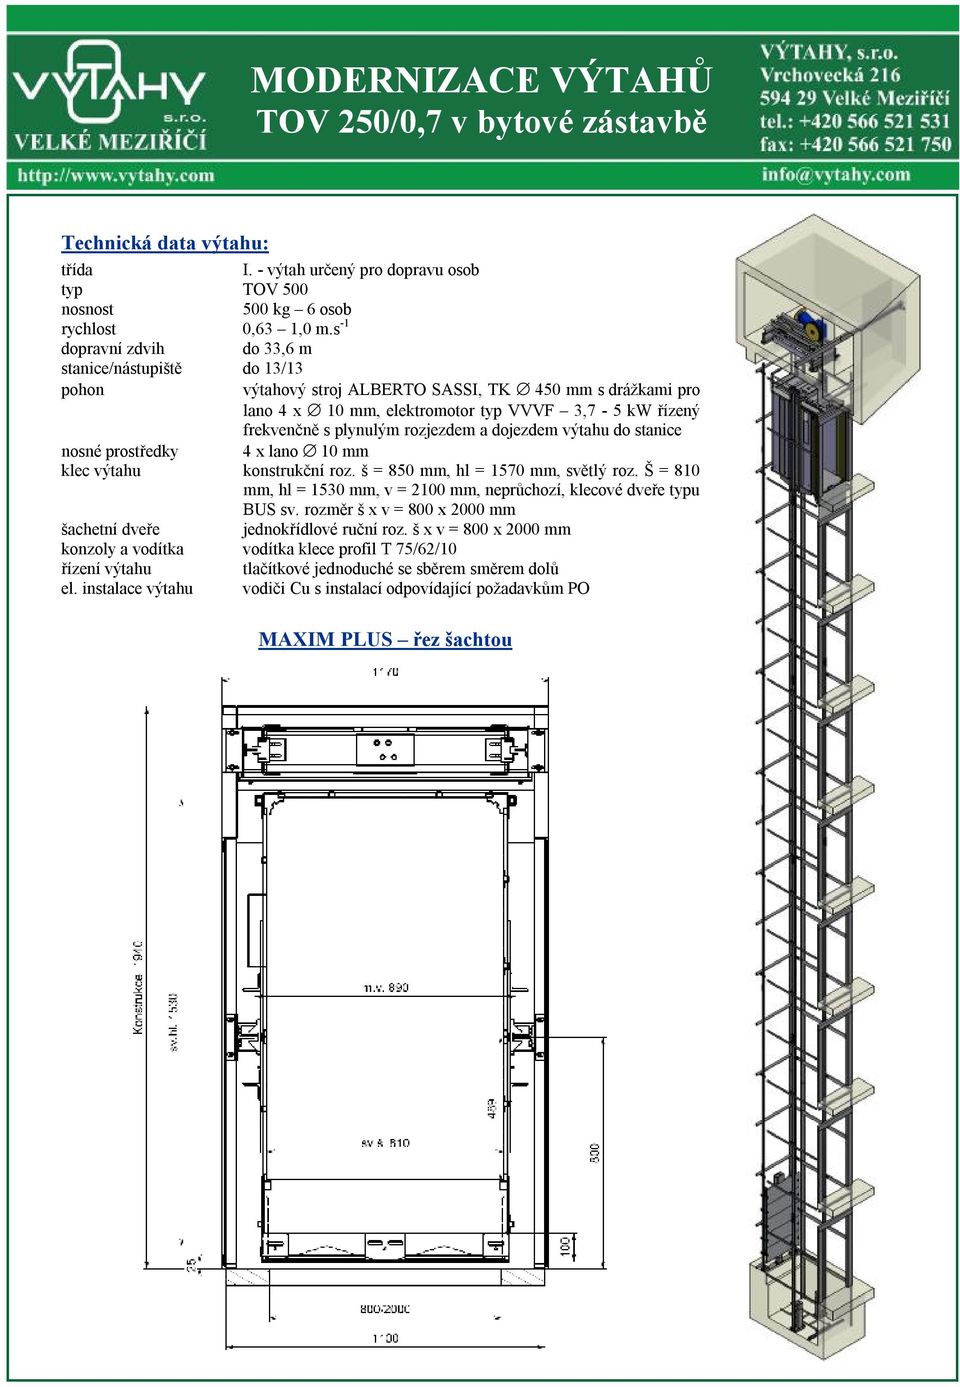 rozjezdem a dojezdem výtahu do stanice nosné prostředky 4 x lano 10 mm klec výtahu konstrukční roz. š = 850 mm, hl = 1570 mm, světlý roz.